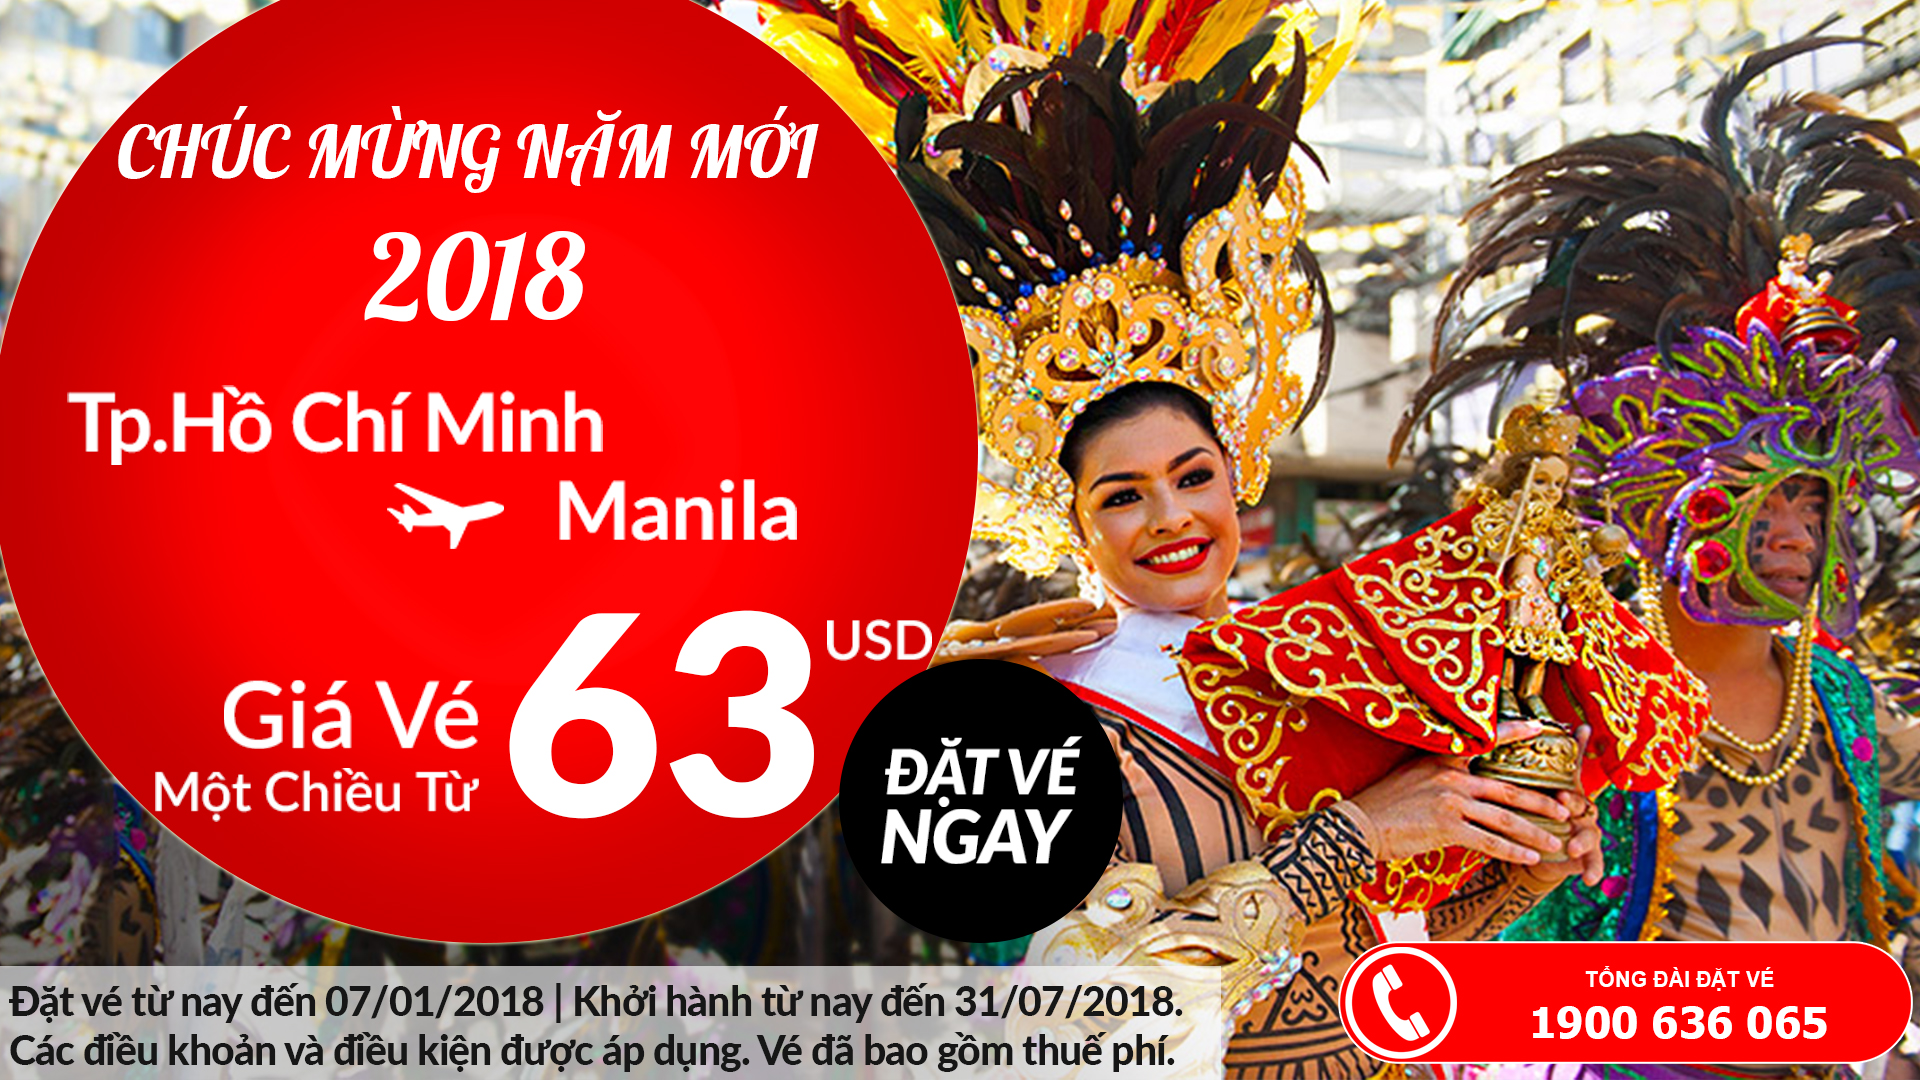 Air Asia ưu đãi vé HCM - Manila chỉ từ 63 USD